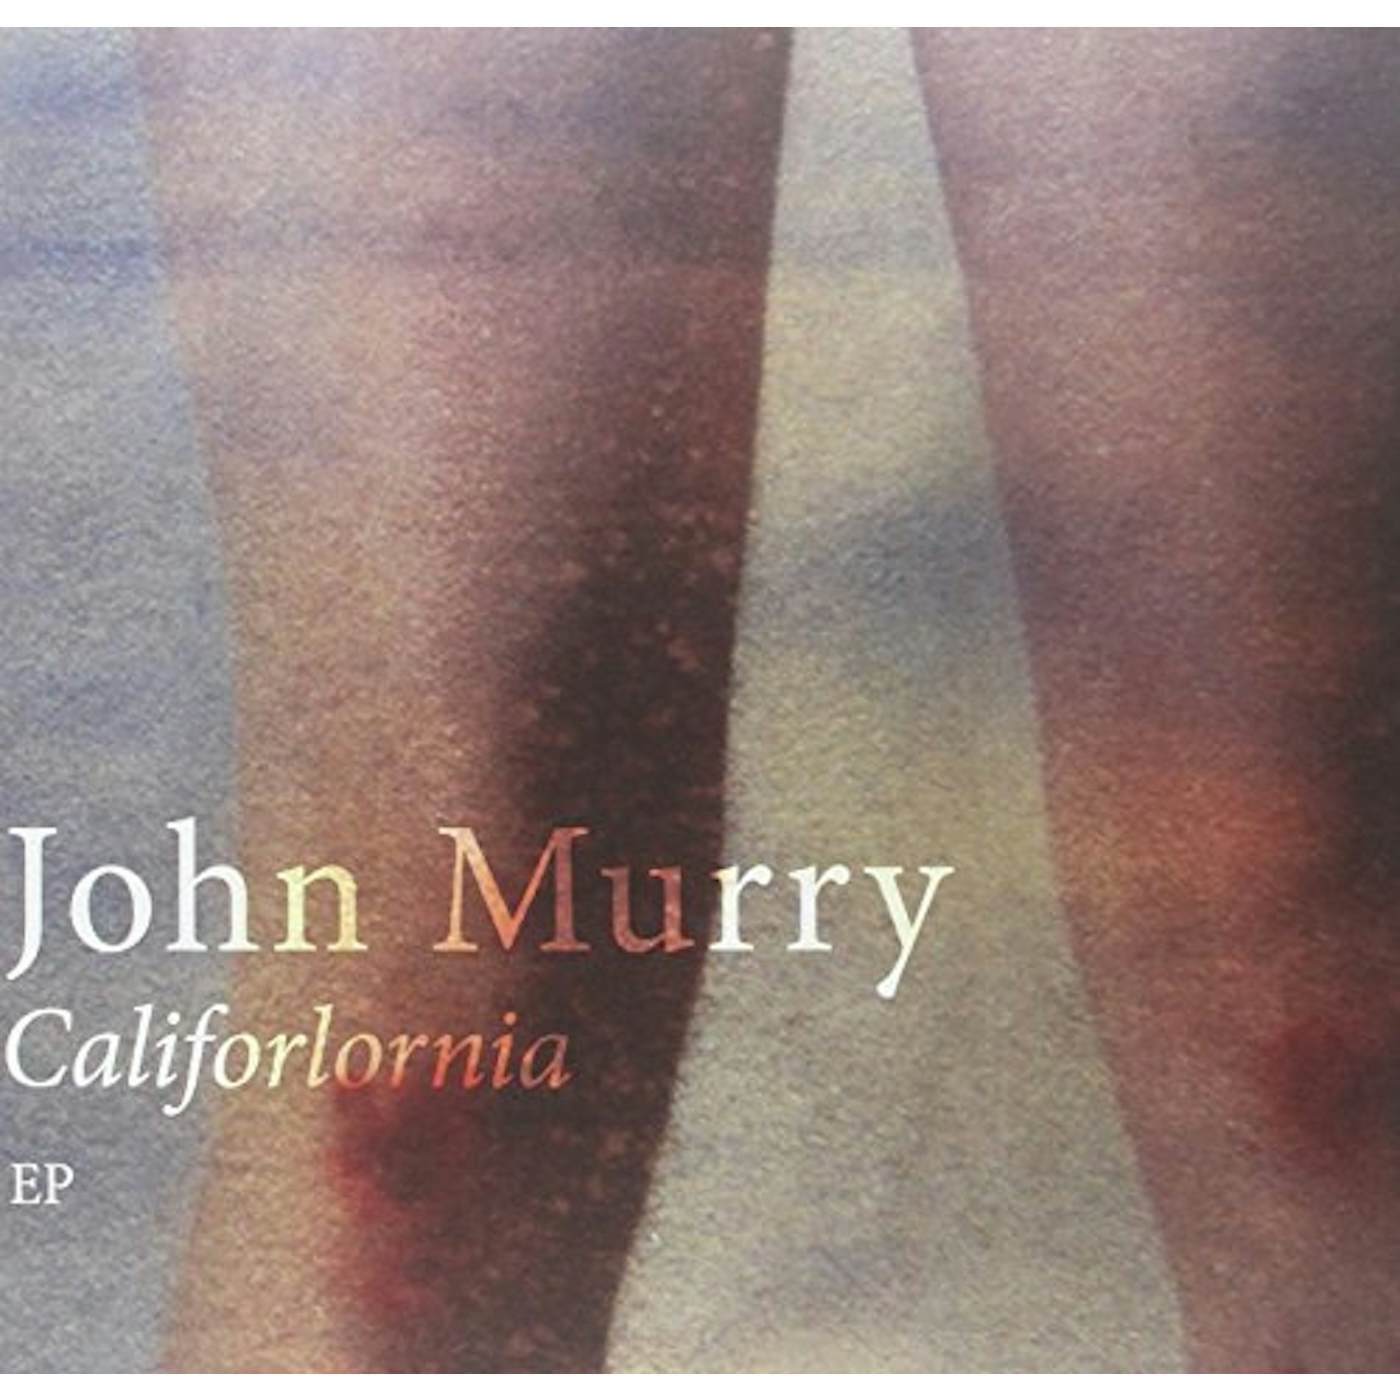 John Murry Califorlornia Vinyl Record